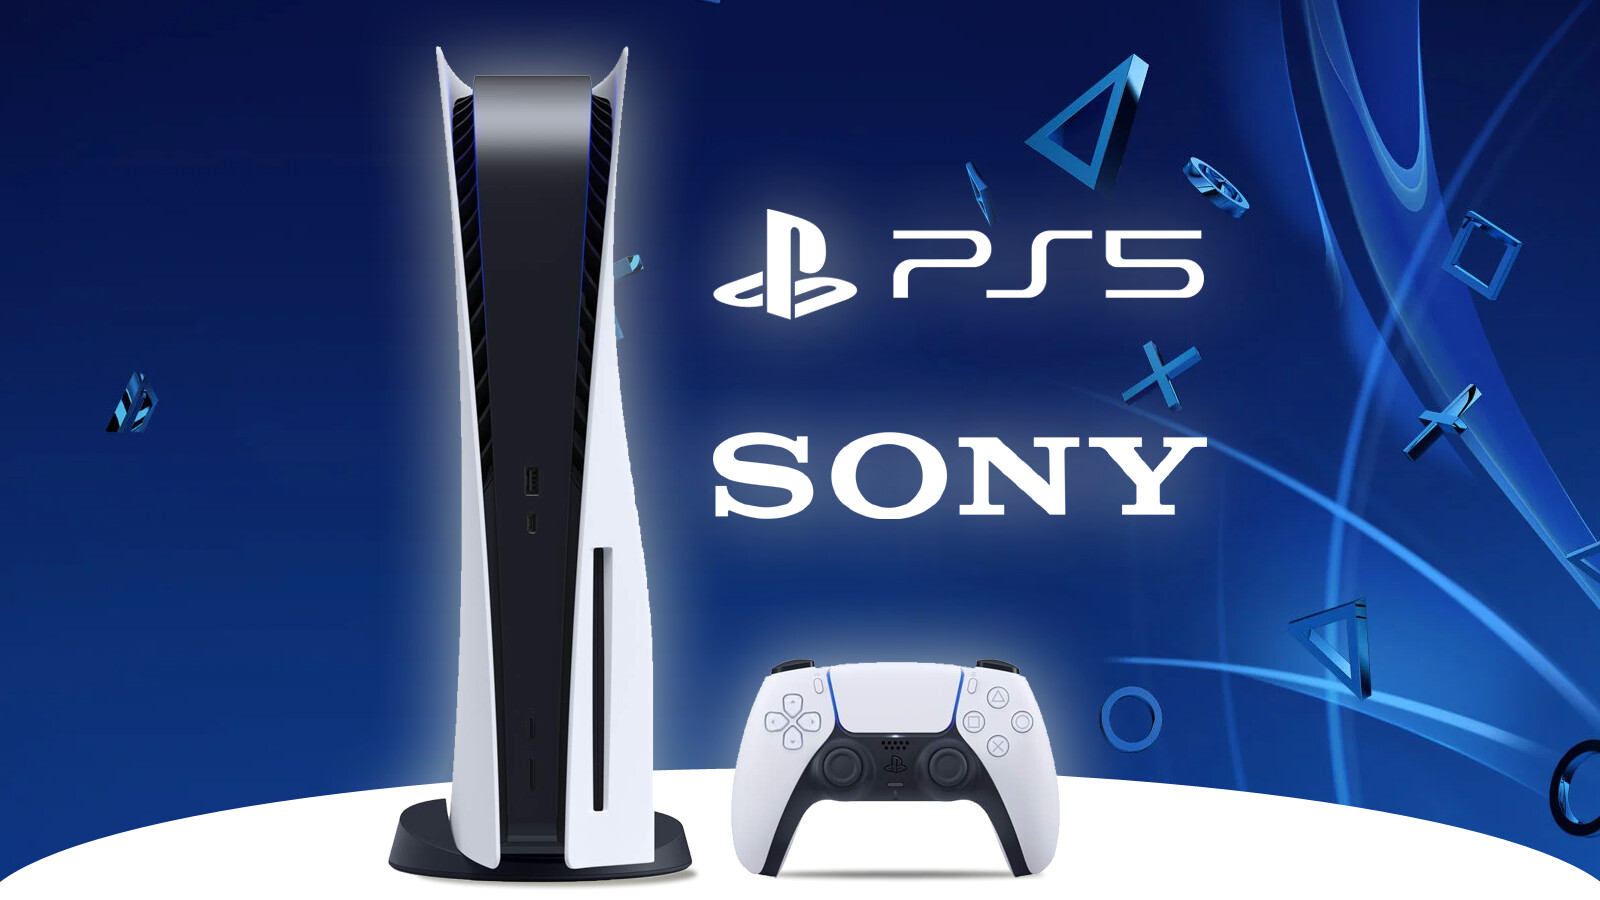 PS5 rechtstreeks van Sony kopen: heb je de landing gemist?  Schrijf je nu in voor de volgende fase